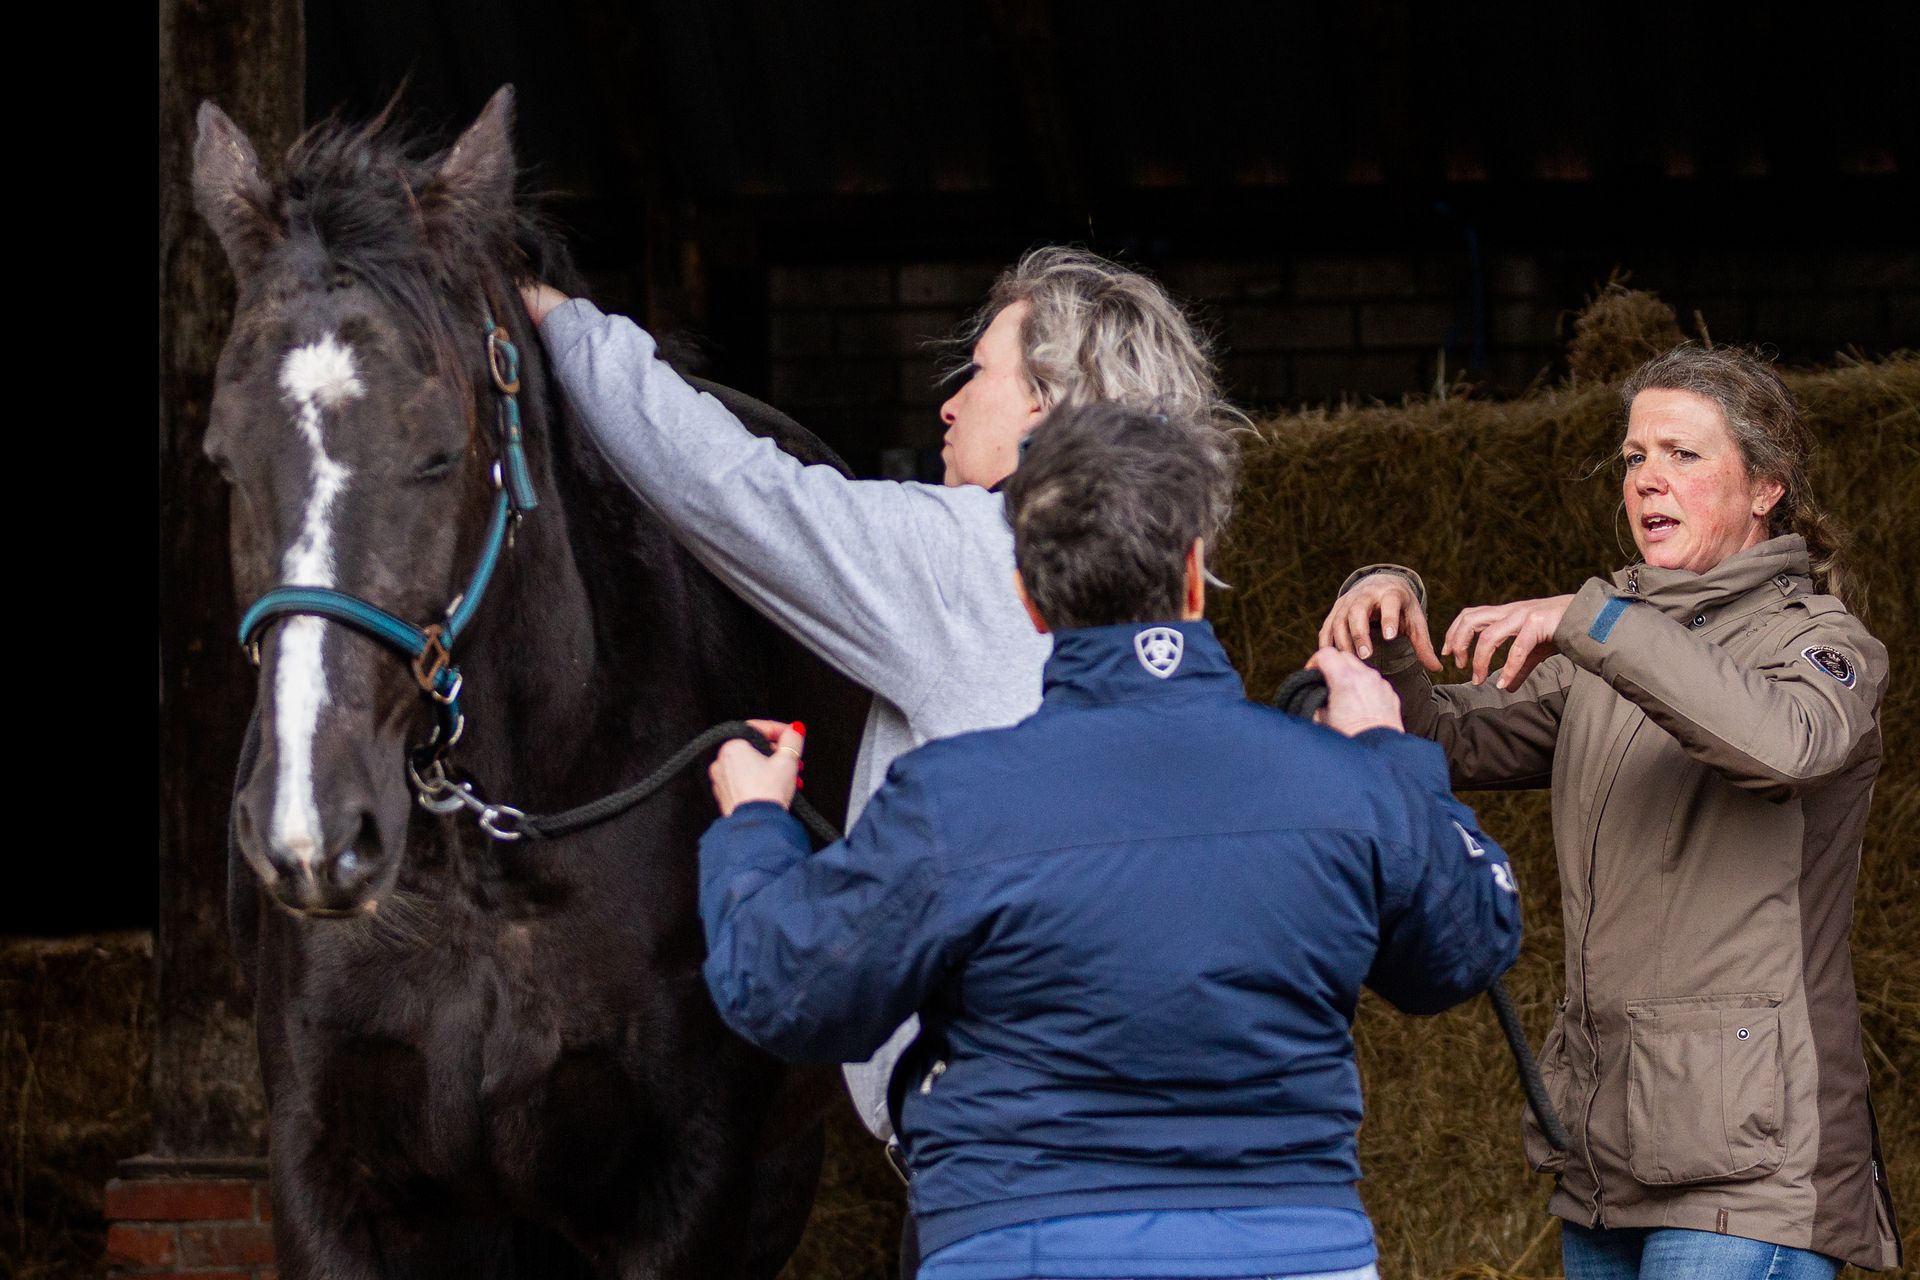 paarden massage workshop cursus leren paard masseren groningen drenthe